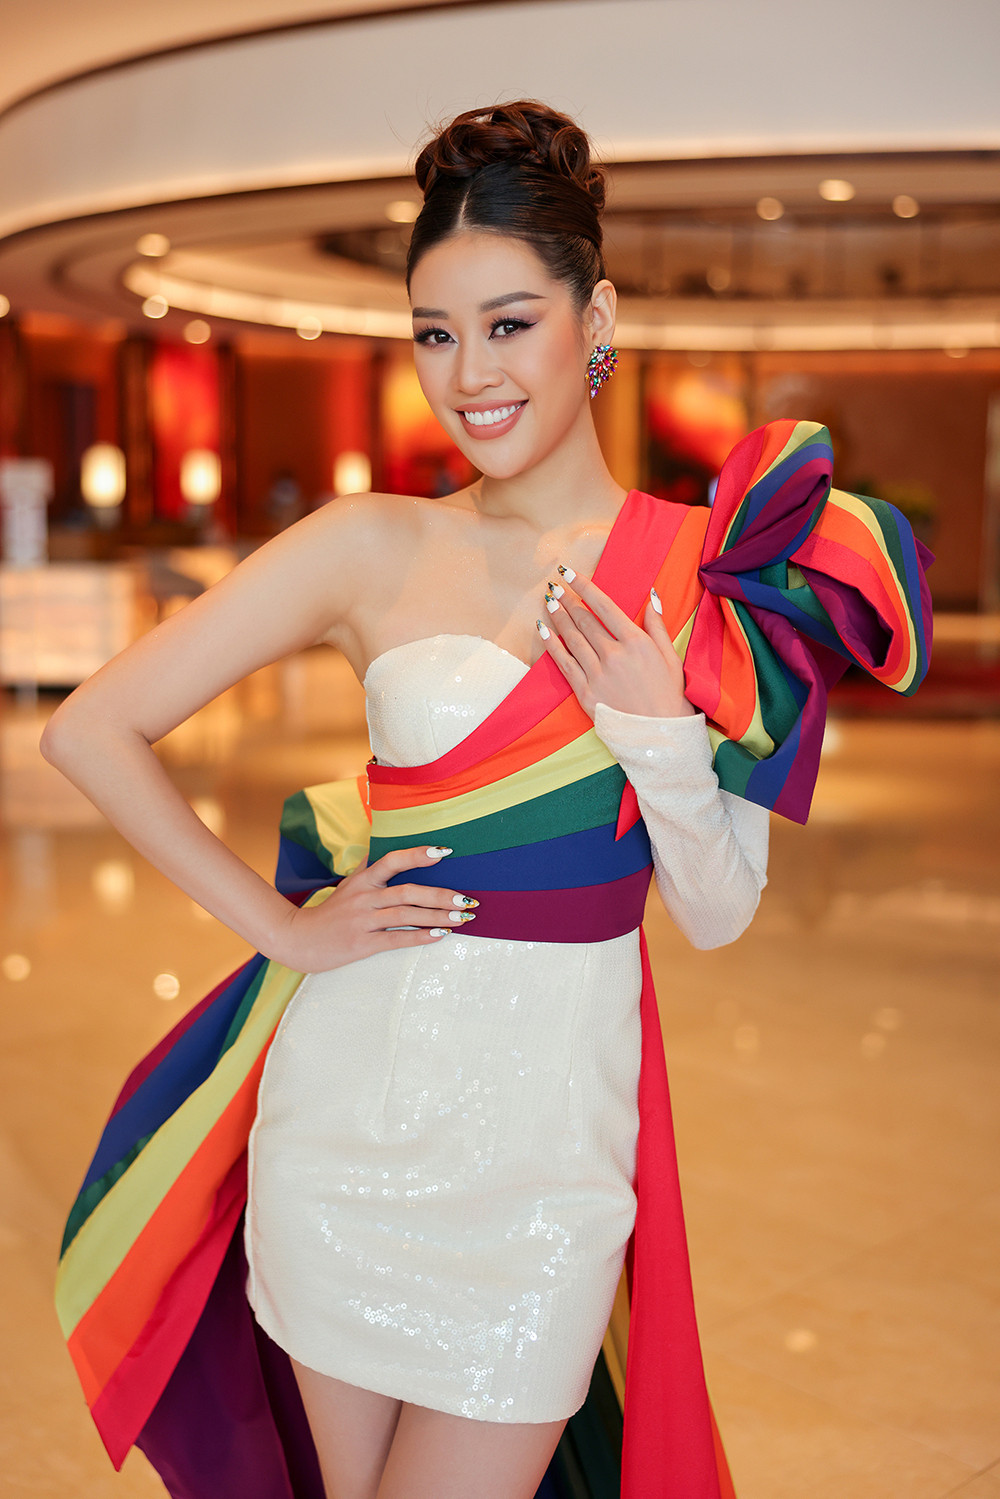 NSND Bạch Tuyết, Khánh Vân làm đại sứ chiến dịch ủng hộ cộng đồng LGBT  - 1